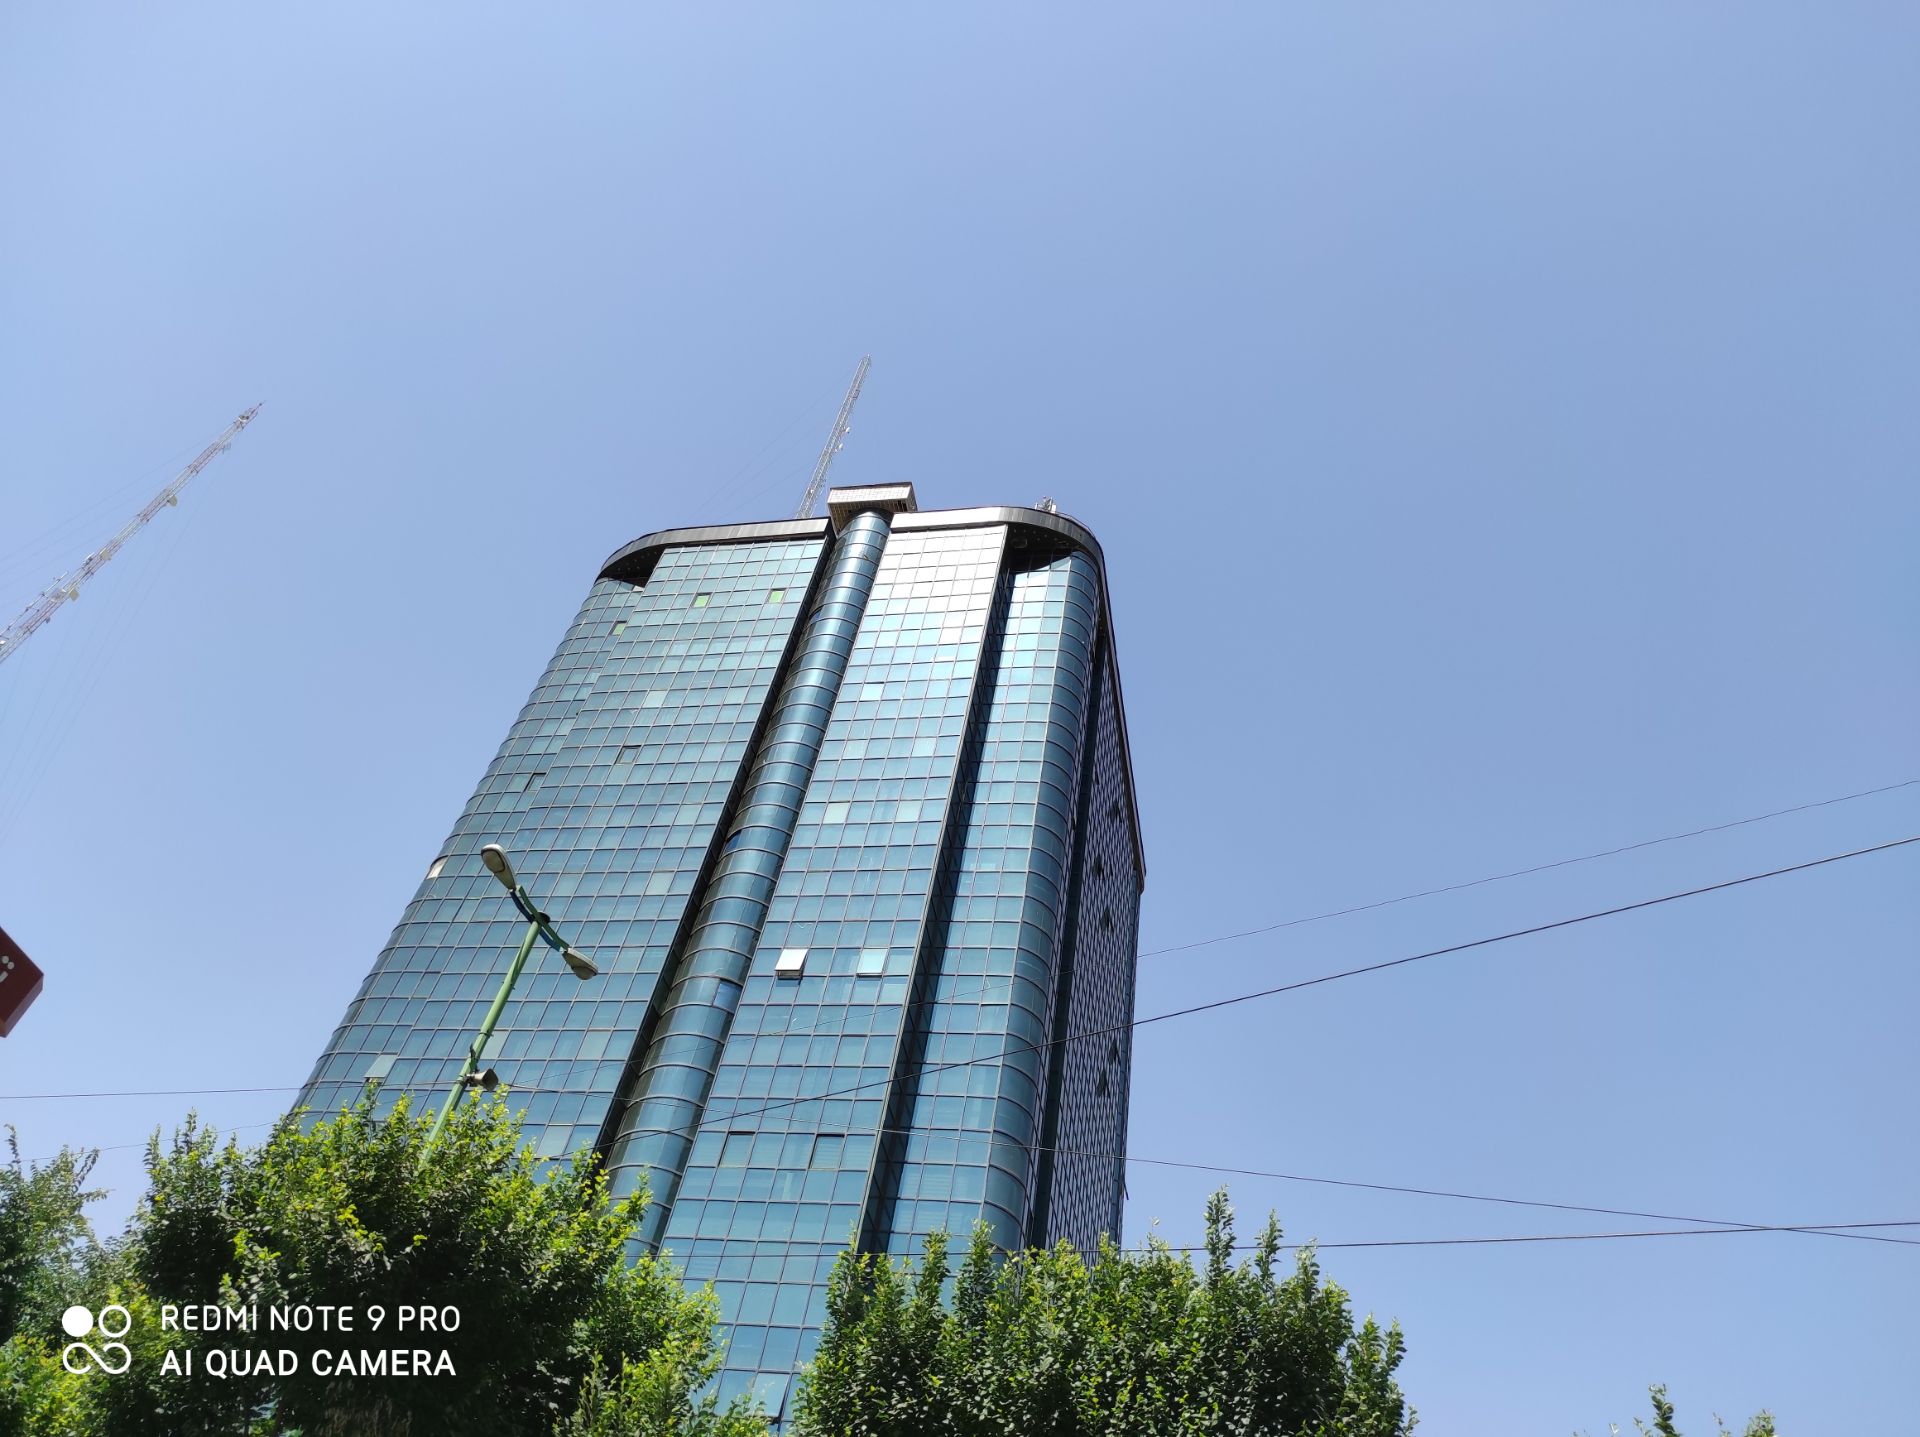 مرجع متخصصين ايران نمونه عكس ردمي نوت 9 پرو - نماي ساختمان بلند